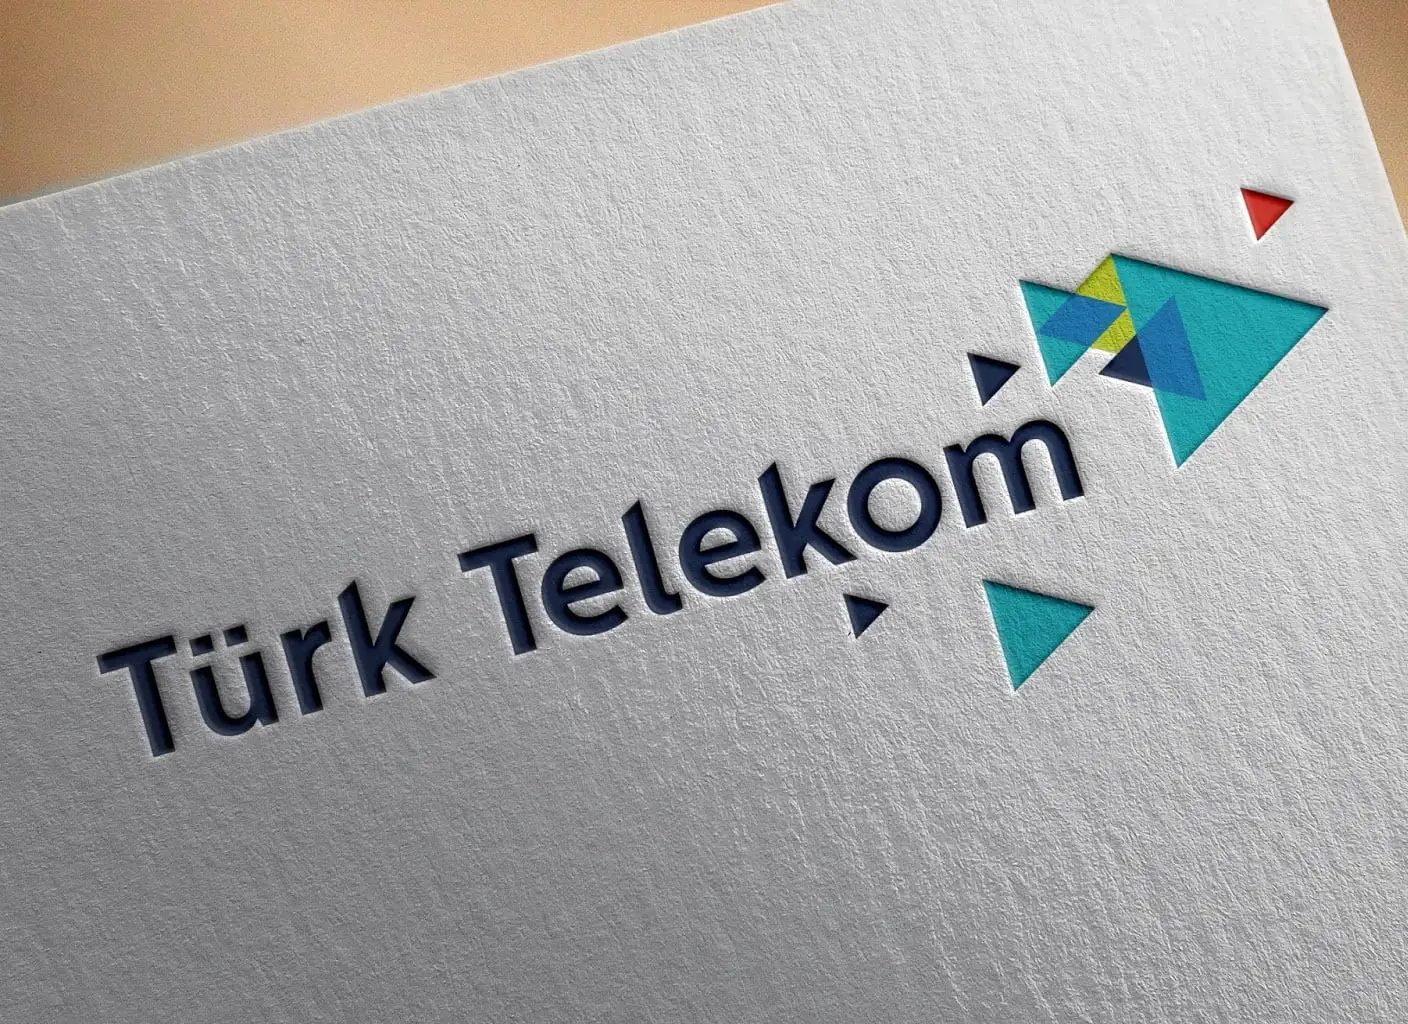 Mobil hattı Türk Telekom olanlara müjde! Herkese 10 GB bayram hediyesi veriliyor: Çifte bayram olacak